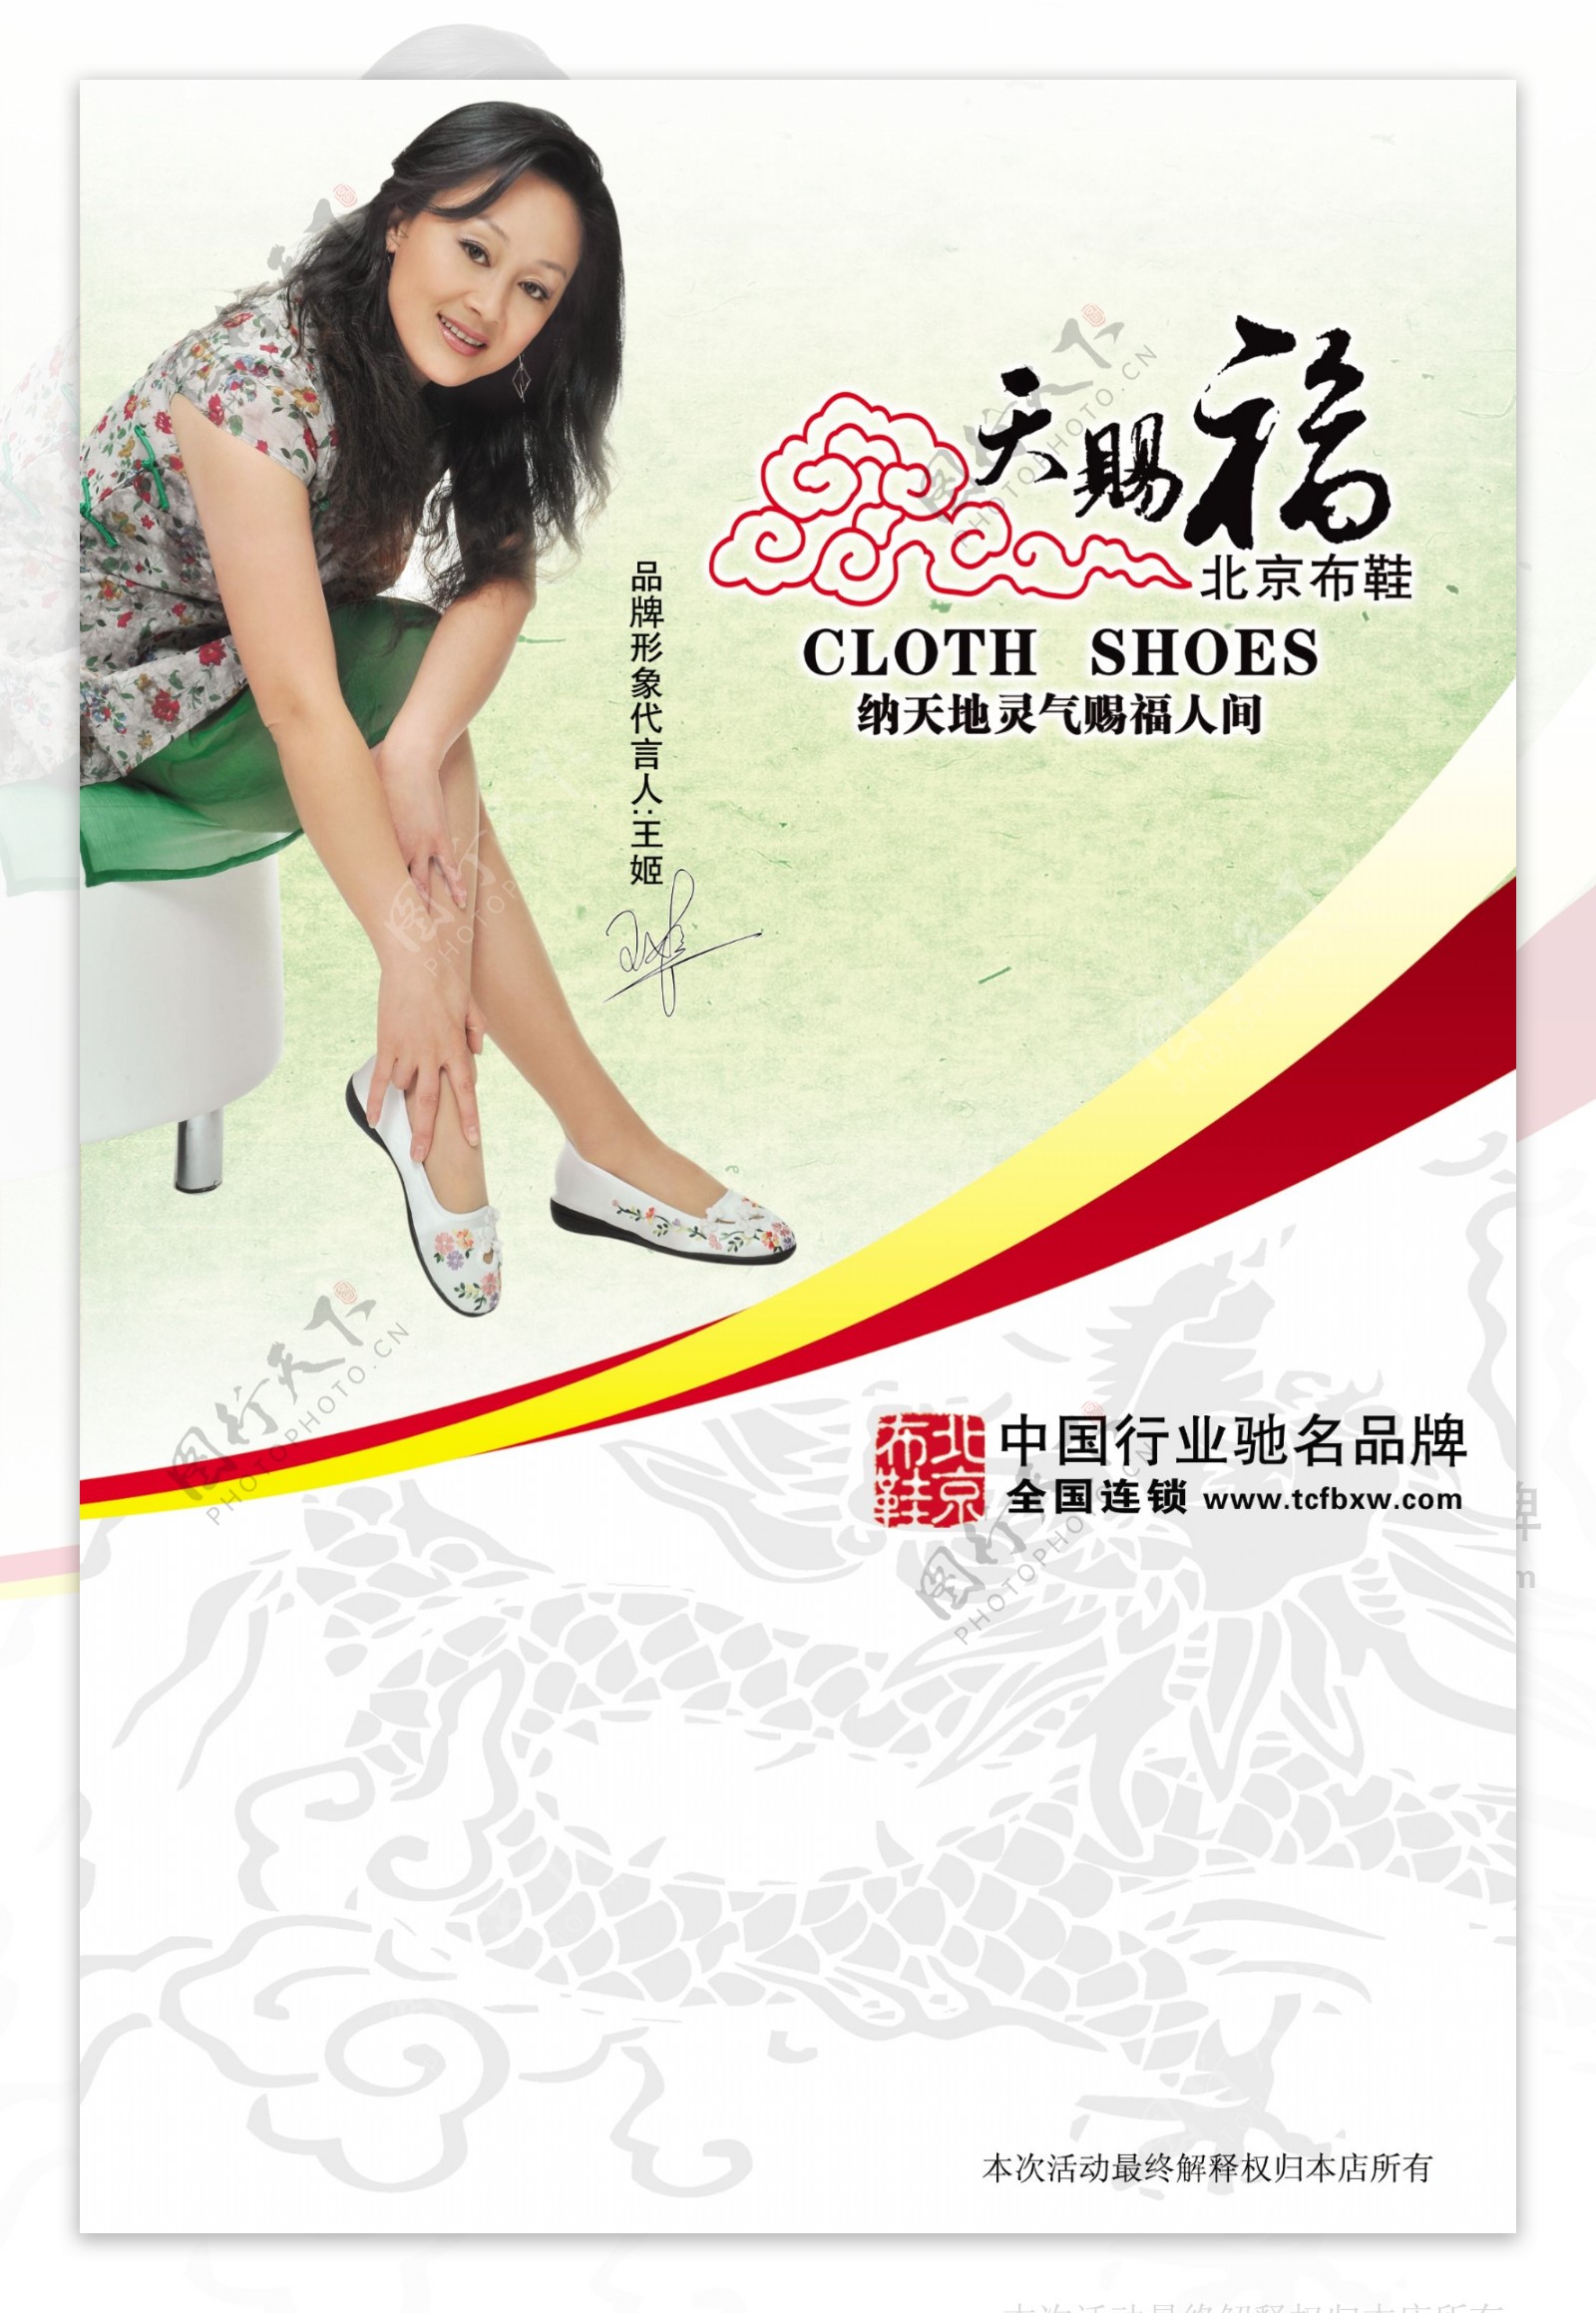 老北京布鞋图片